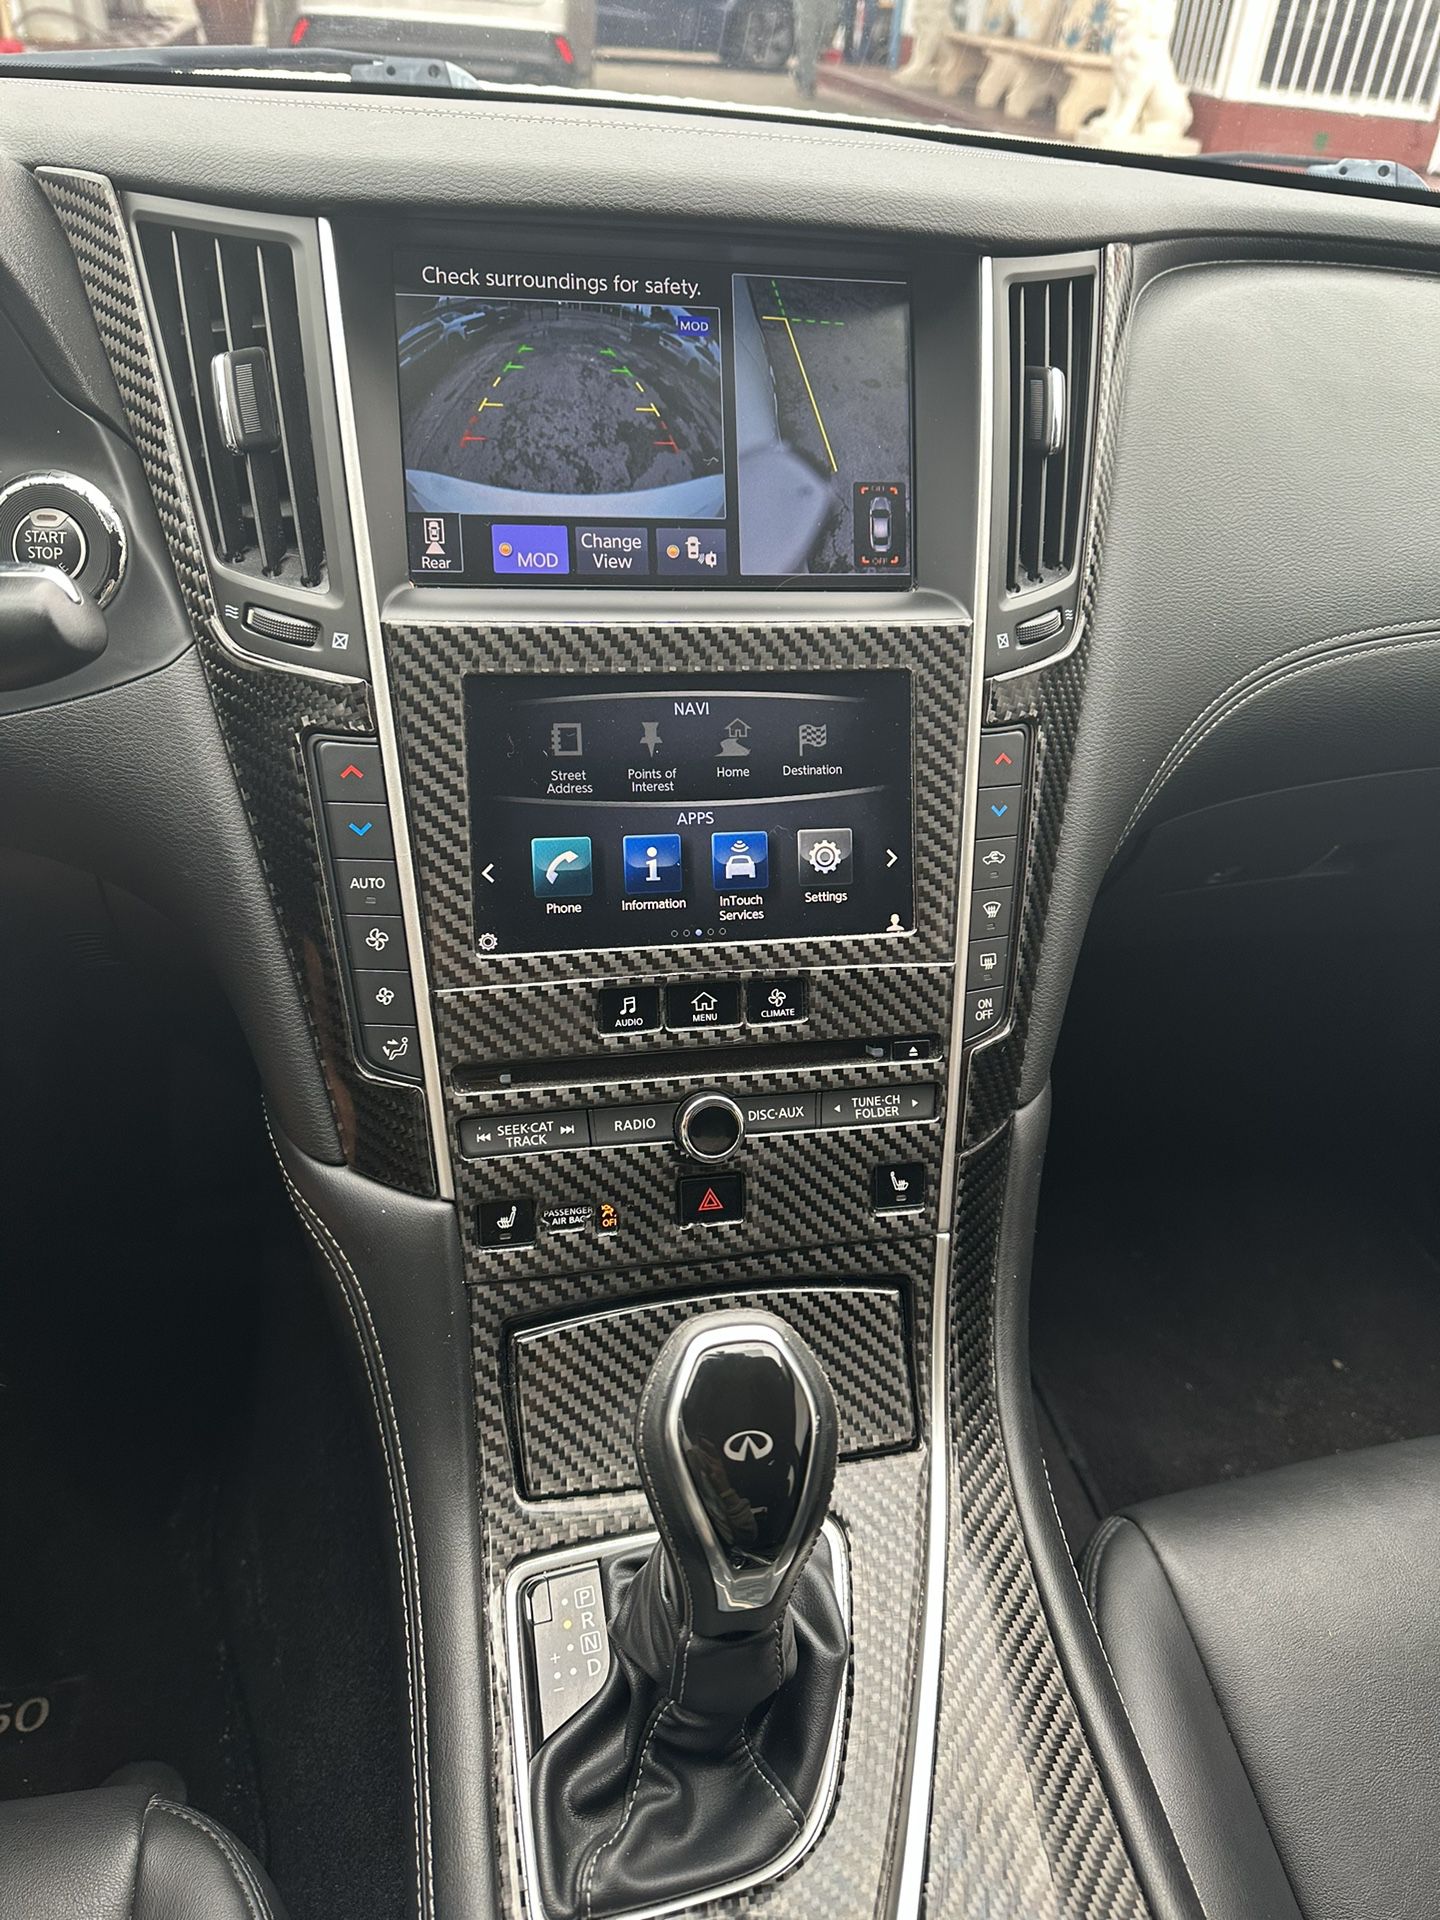 used 2018 INFINITI Q50 - interior view 3